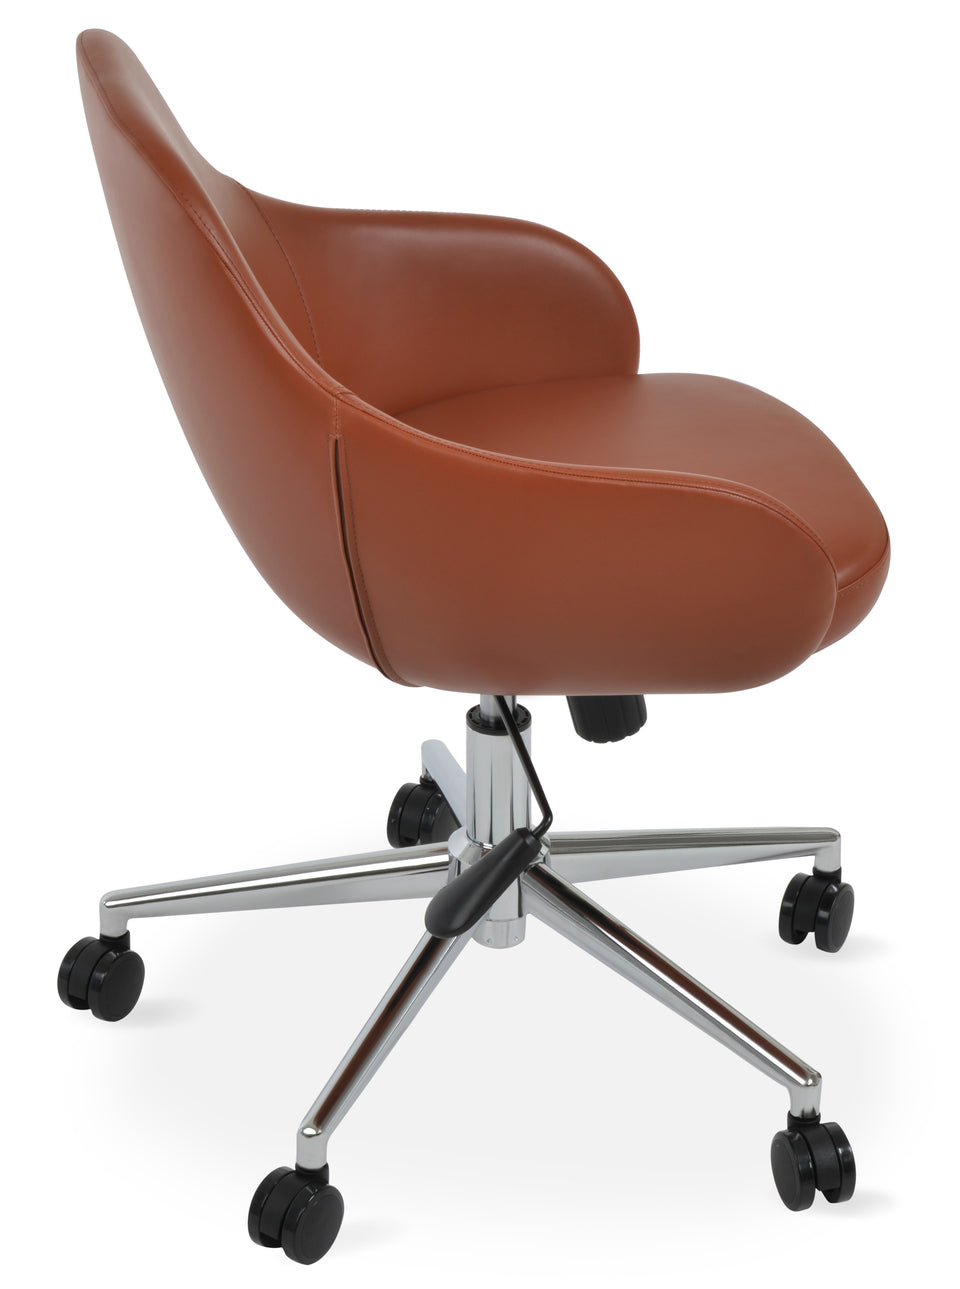 Gazel Arm Office Chair.